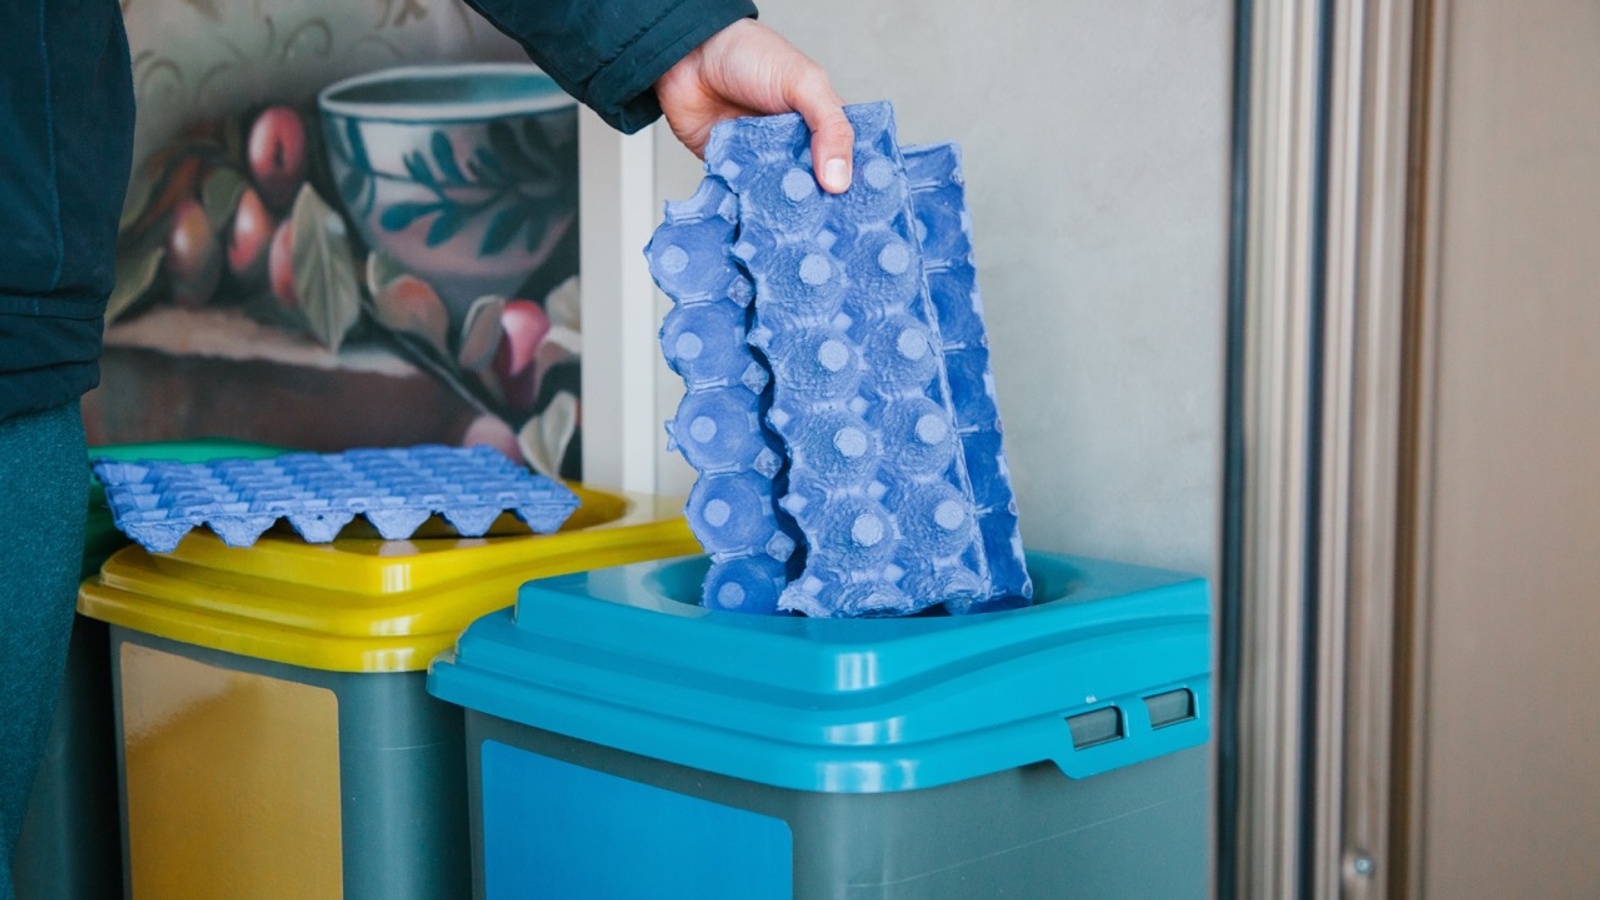 Recycling a blue egg carton box